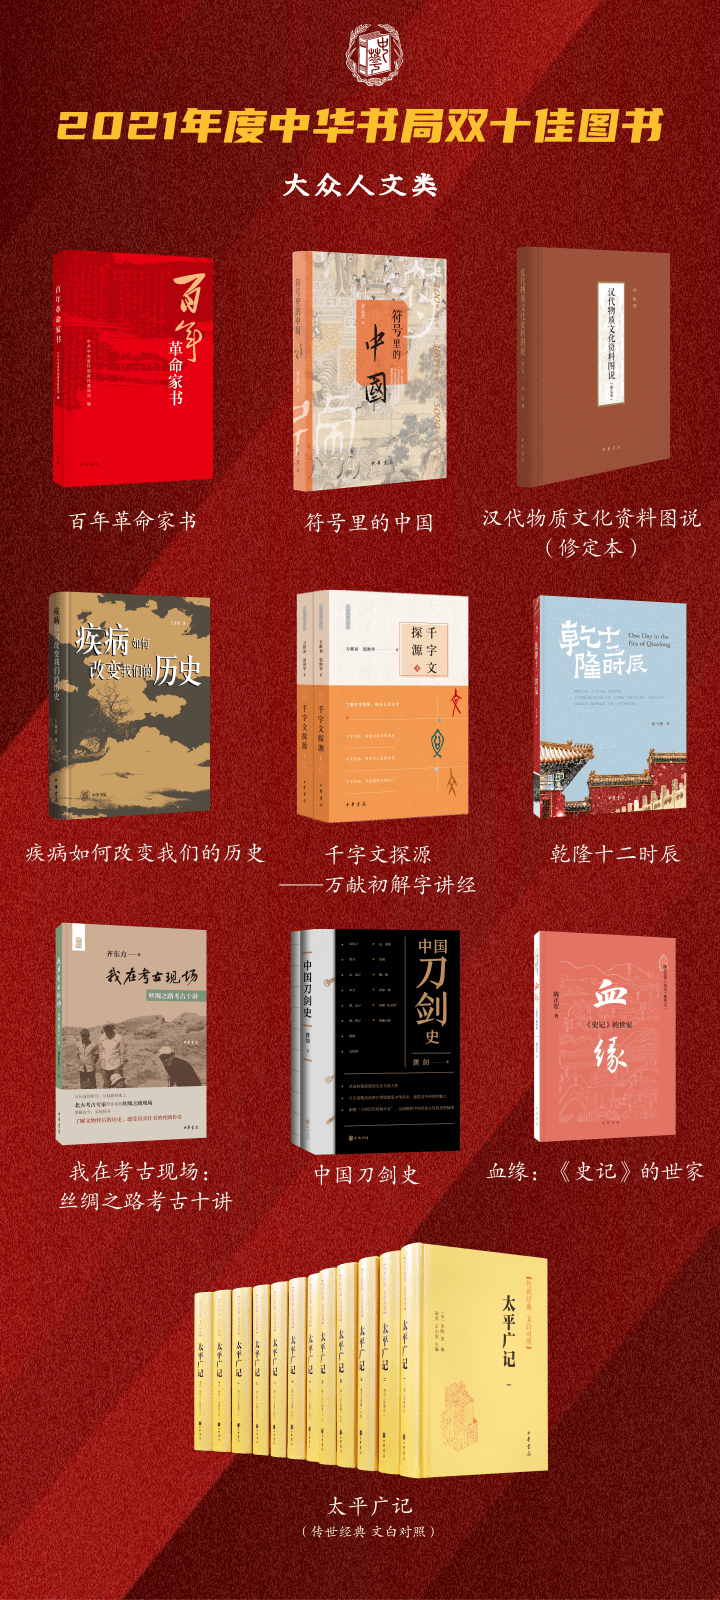 2021年度中华书局双十佳图书揭晓